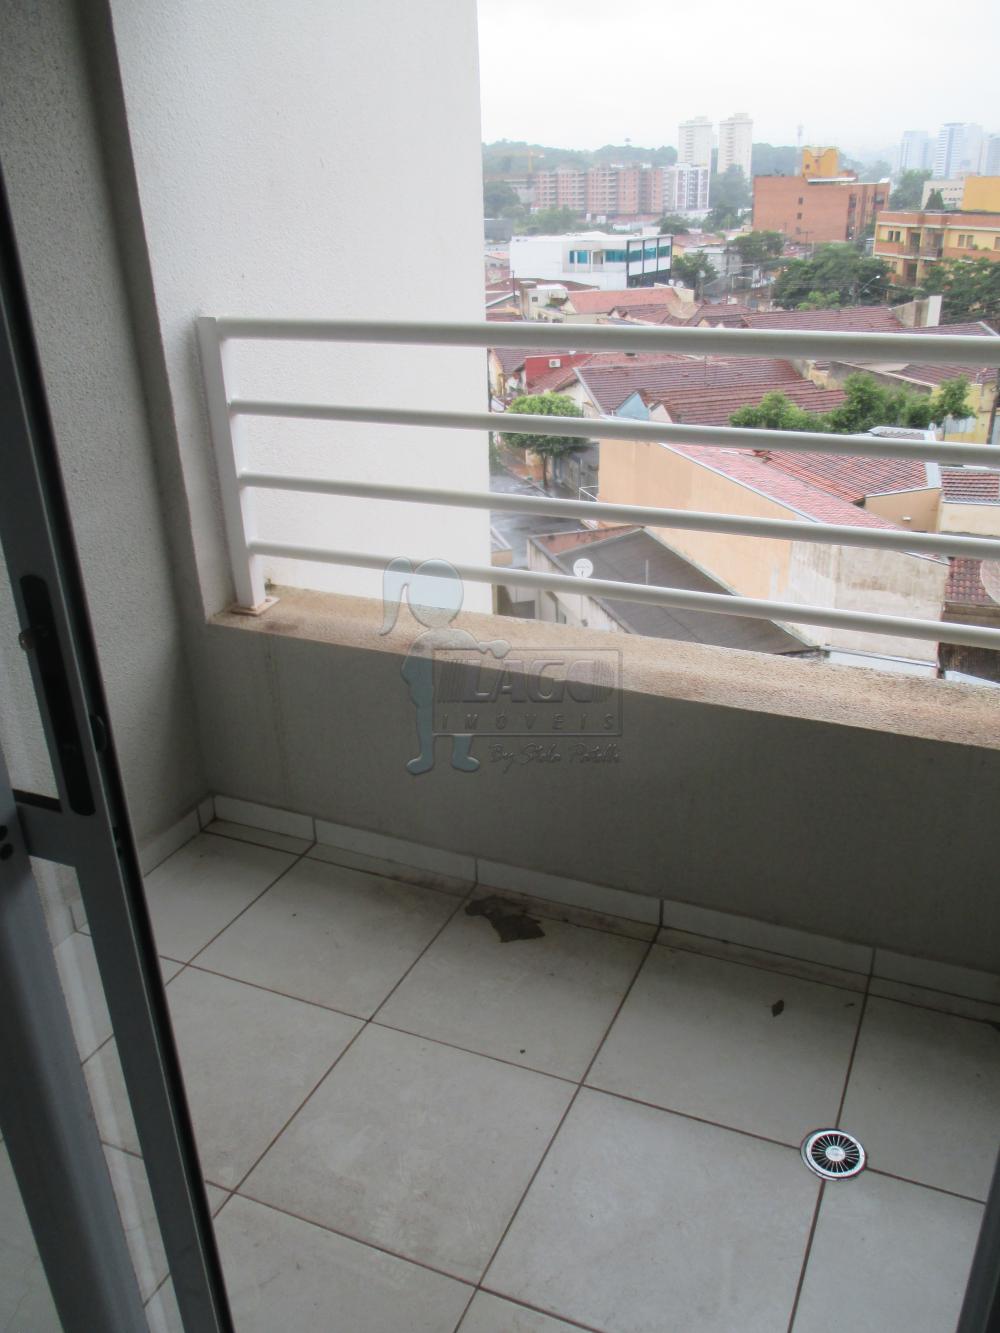 Comprar Apartamentos / Padrão em Ribeirão Preto R$ 318.000,00 - Foto 2